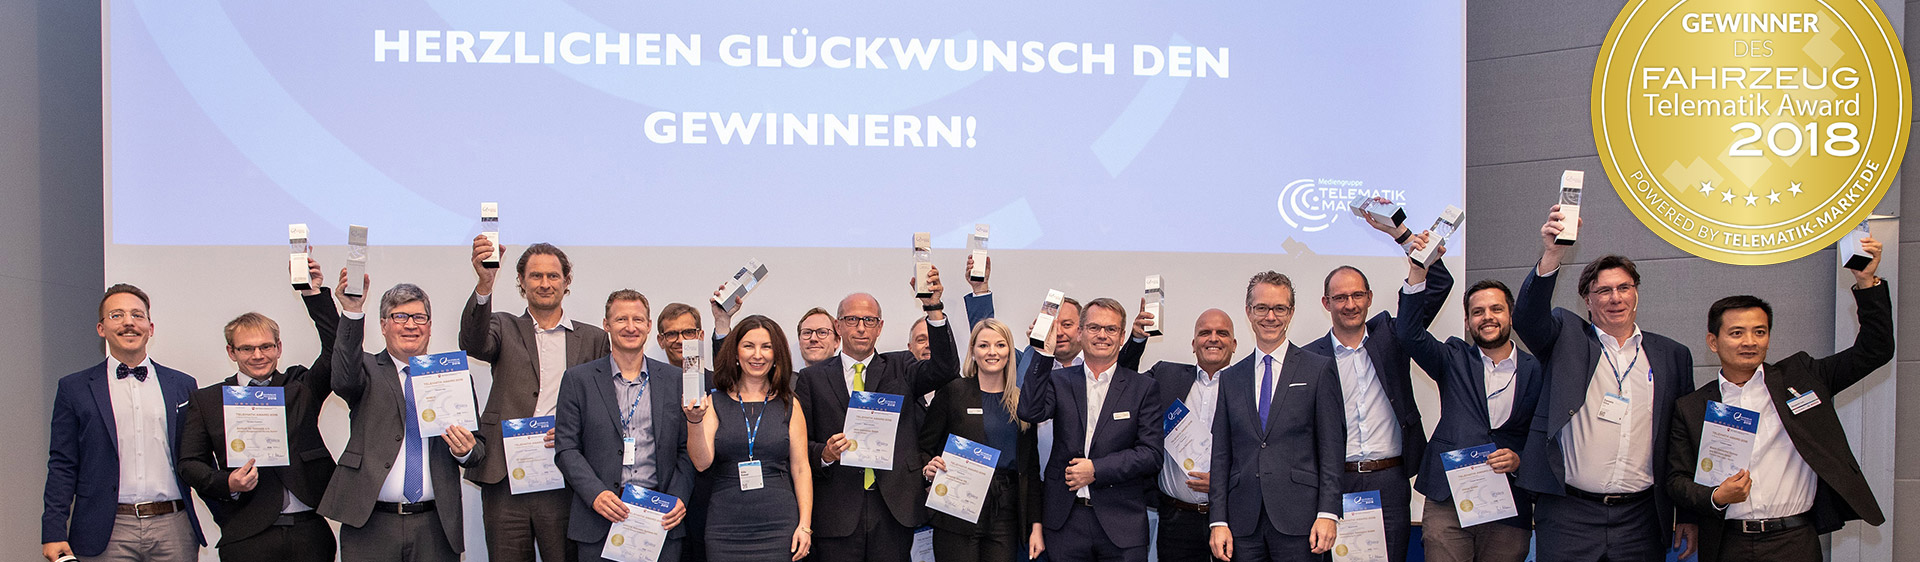 Telematik Award 2018